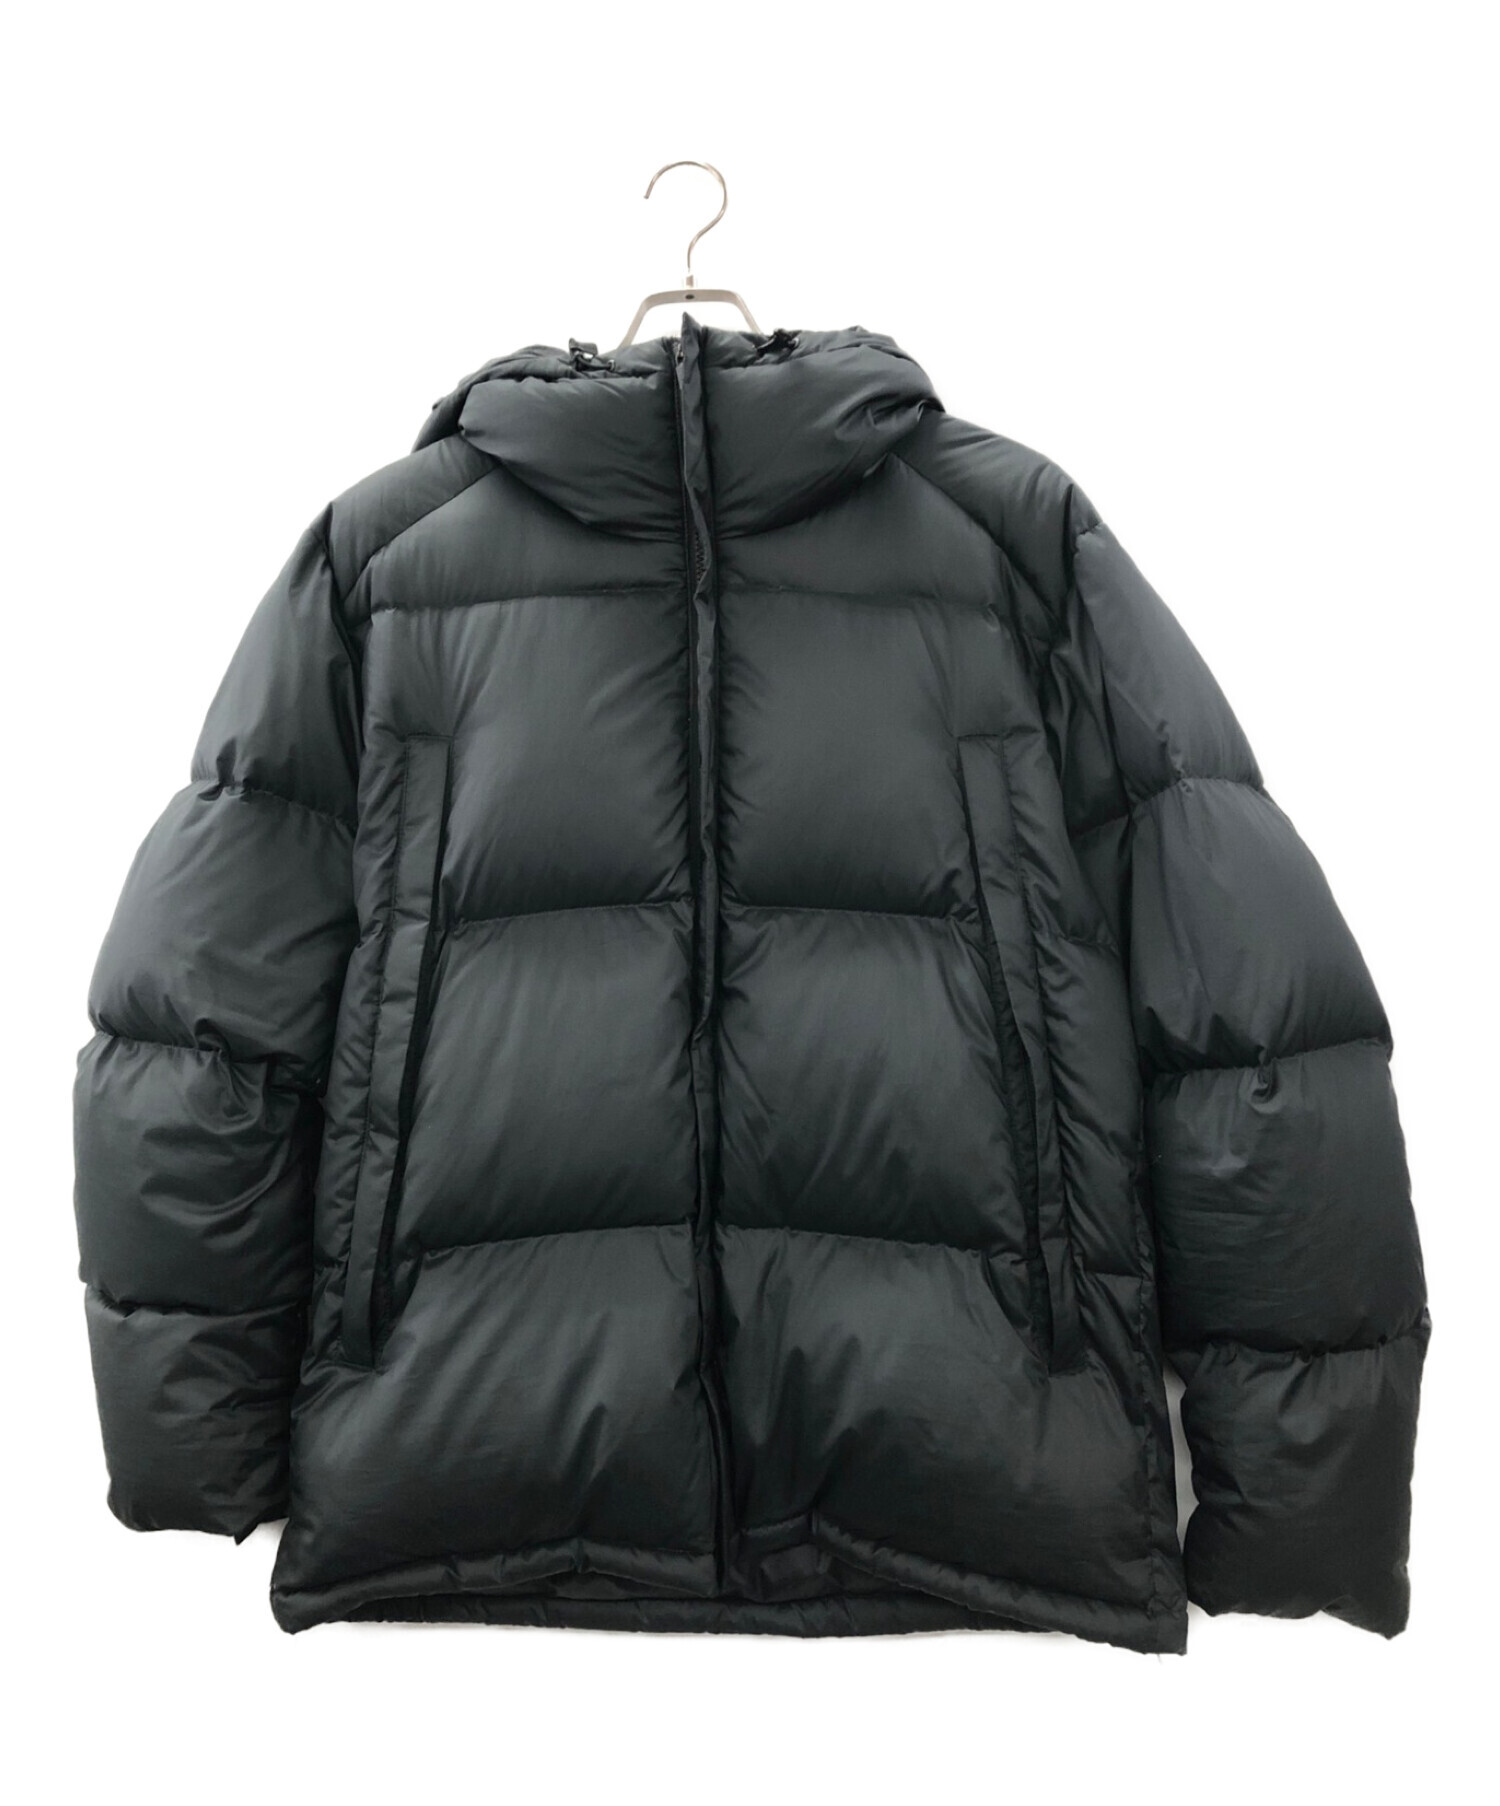 Snow peak (スノーピーク) ダウンジャケット ブラック サイズ:L